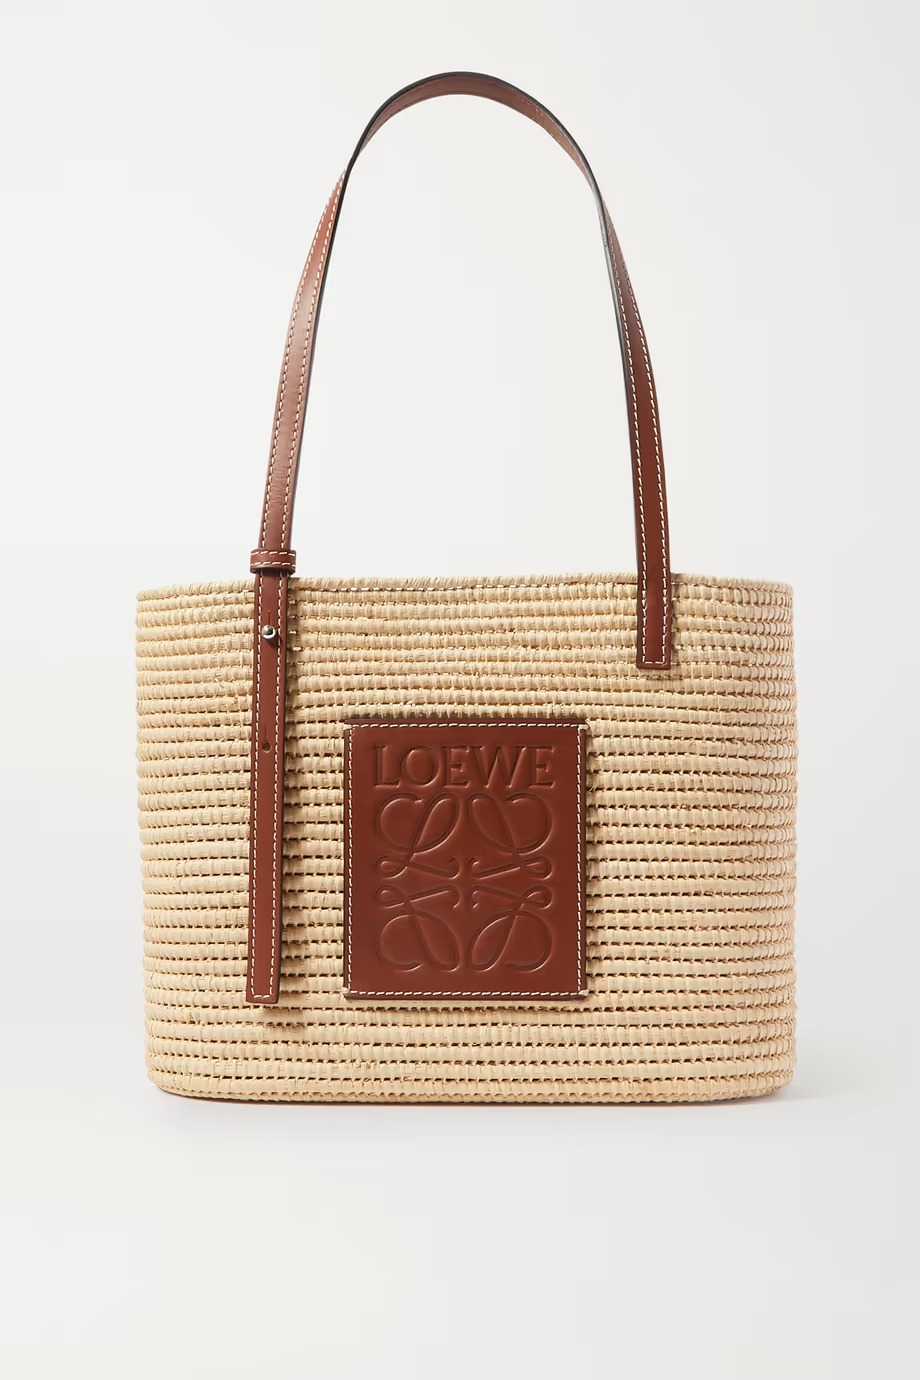 Where can I buy a Louis Vuitton 'vintage' handbag under $500? - Quora